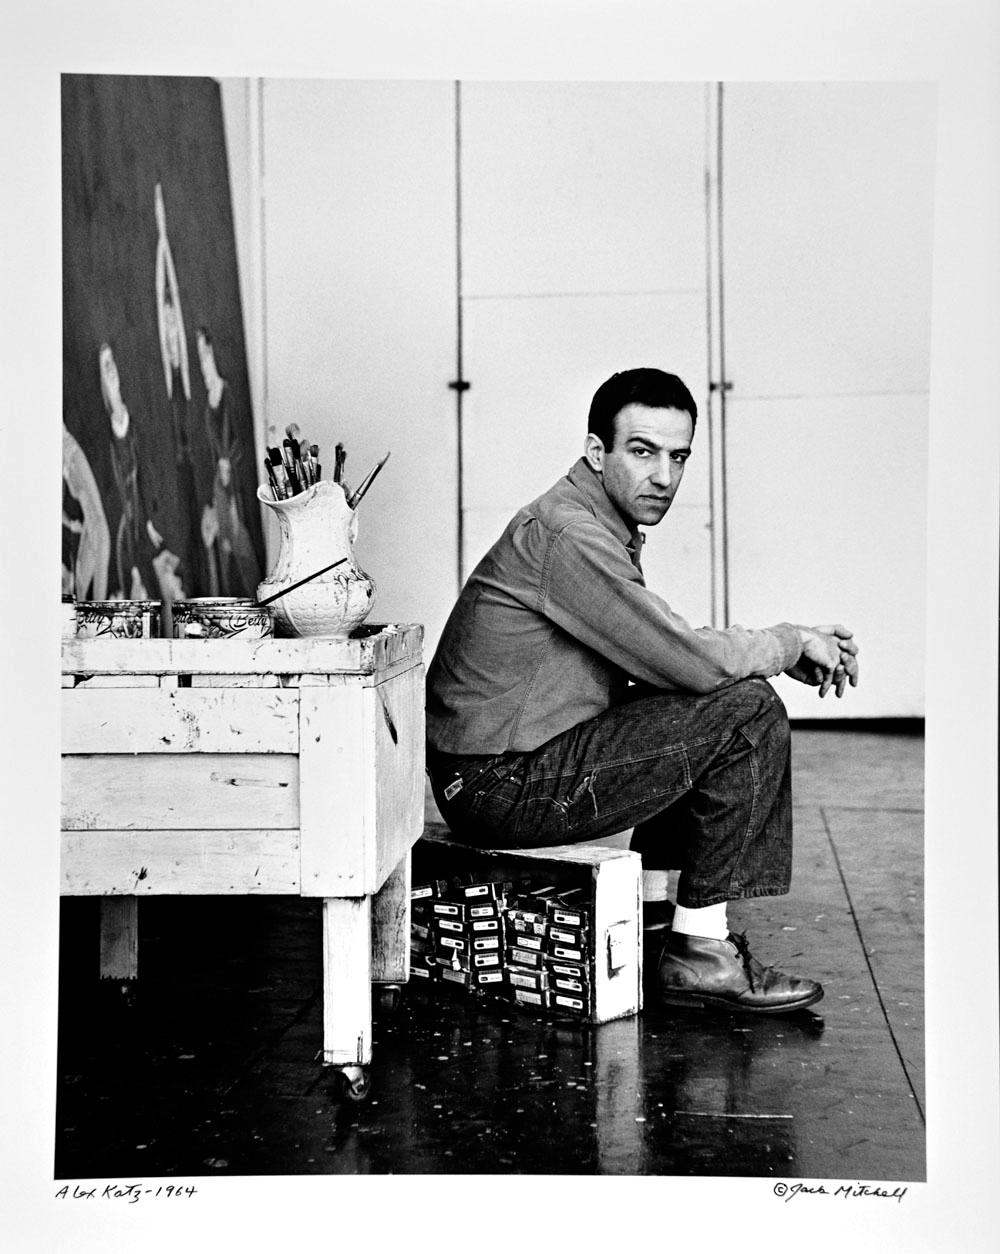 11 x 14" alte Silbergelatinefotografie des Künstlers Alex Katz in seinem Atelier im Jahr 1964. Signiert von Jack Mitchell auf der Vorderseite des Drucks. Kommt direkt aus dem Jack Mitchell Archiv mit einem Echtheitszertifikat.

 Jack Mitchells